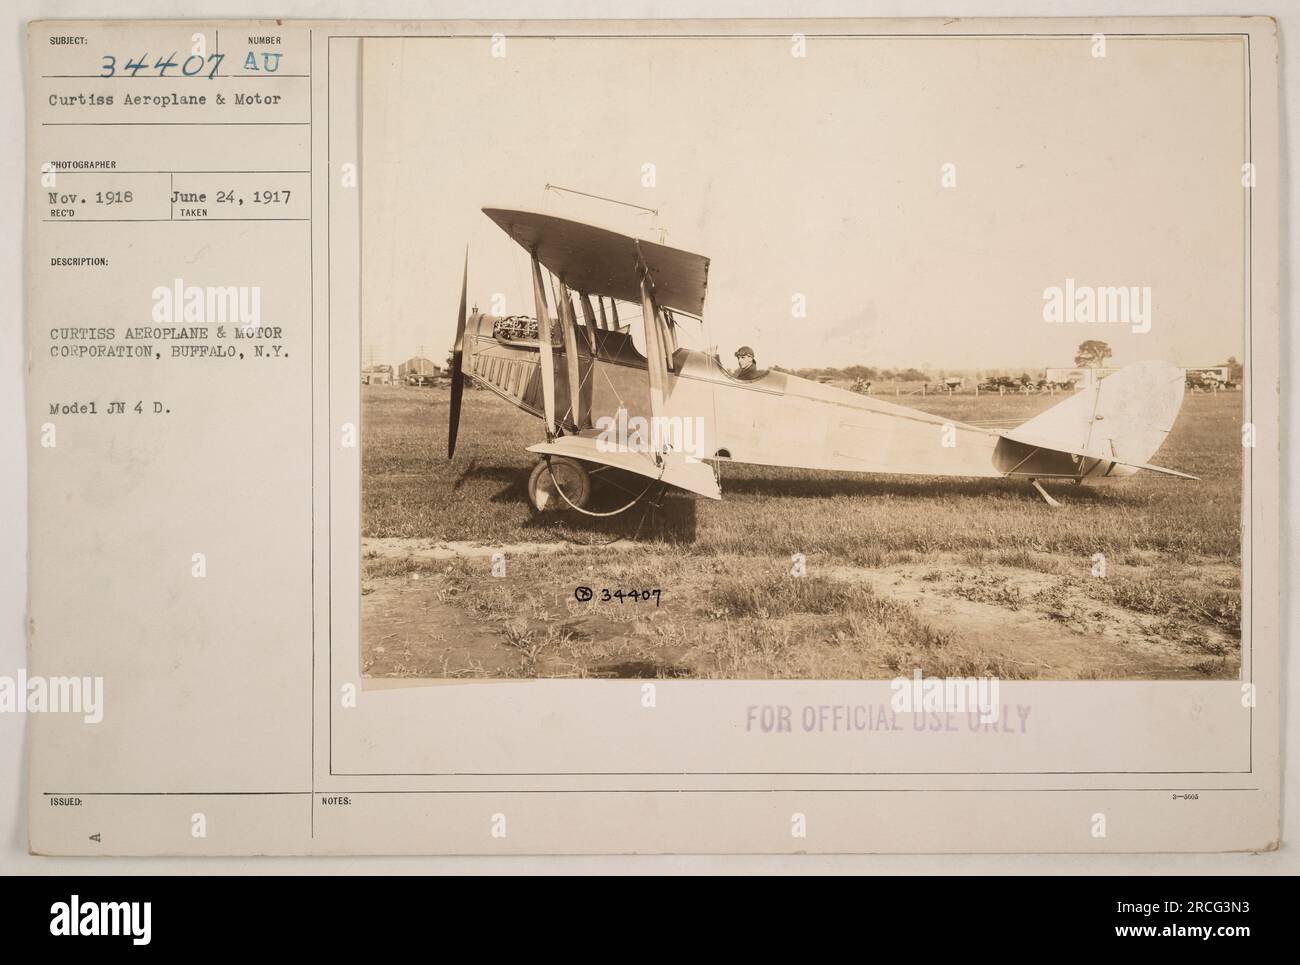 A Curtiss Aeroplane & Motor Corporation's Model JN 4 D in Buffalo, New York, während des Ersten Weltkriegs. Dieses Bild zeigt das Flugzeug vom 24. Juni 1917. Im November 1918 von einem offiziellen Fotografen fotografiert. Bitte beachten Sie, dass dieses Foto die Nummer 34407 trägt und nur zur amtlichen Verwendung herausgegeben wurde. Stockfoto